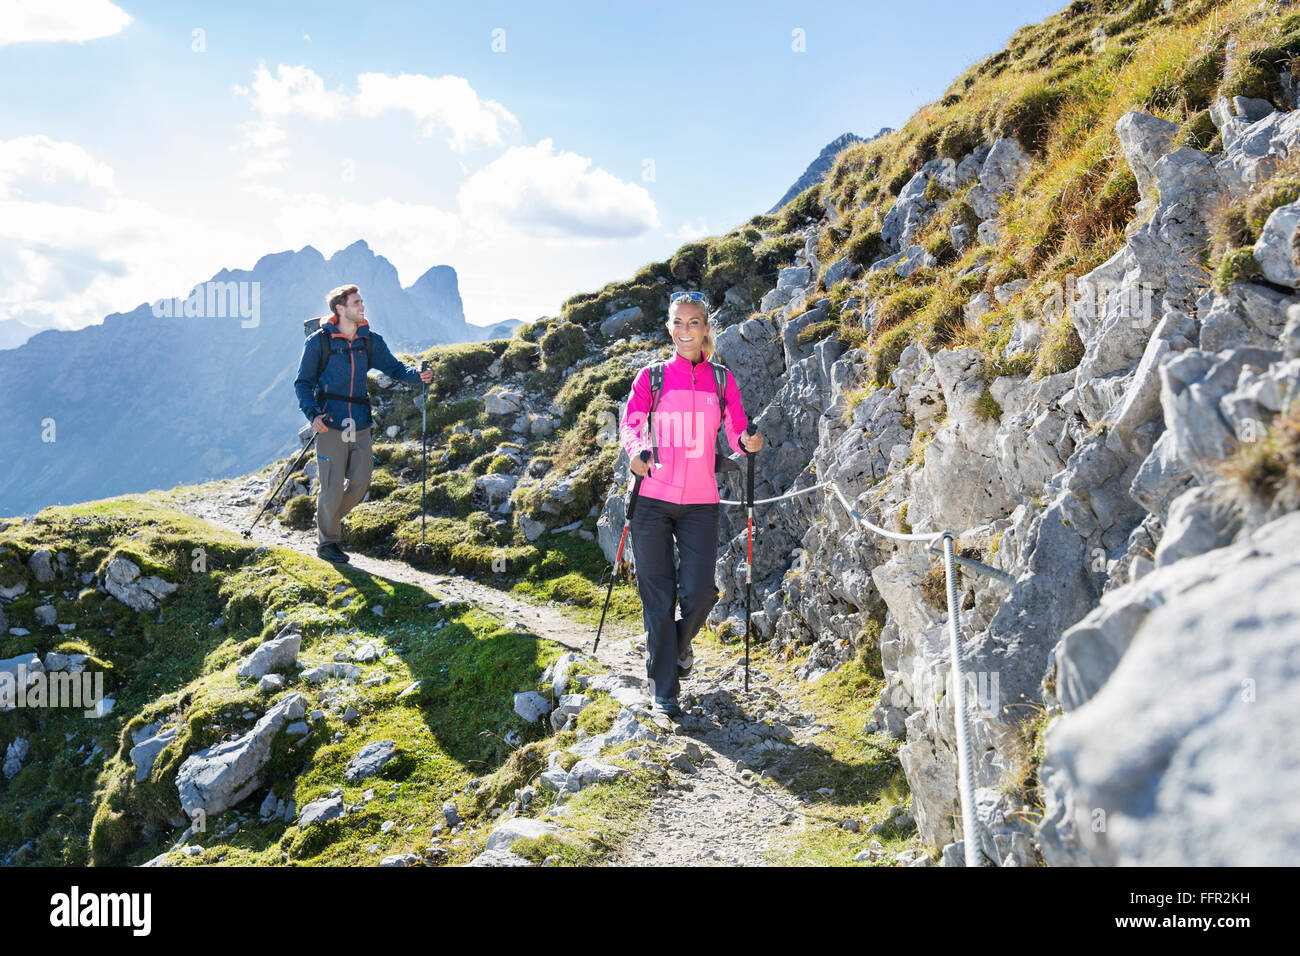 Les randonneurs, l'homme et la femme sur un sentier de randonnée avec corde de sécurité Goetheweg, Karwendel, Innsbruck, Tyrol, Autriche Banque D'Images